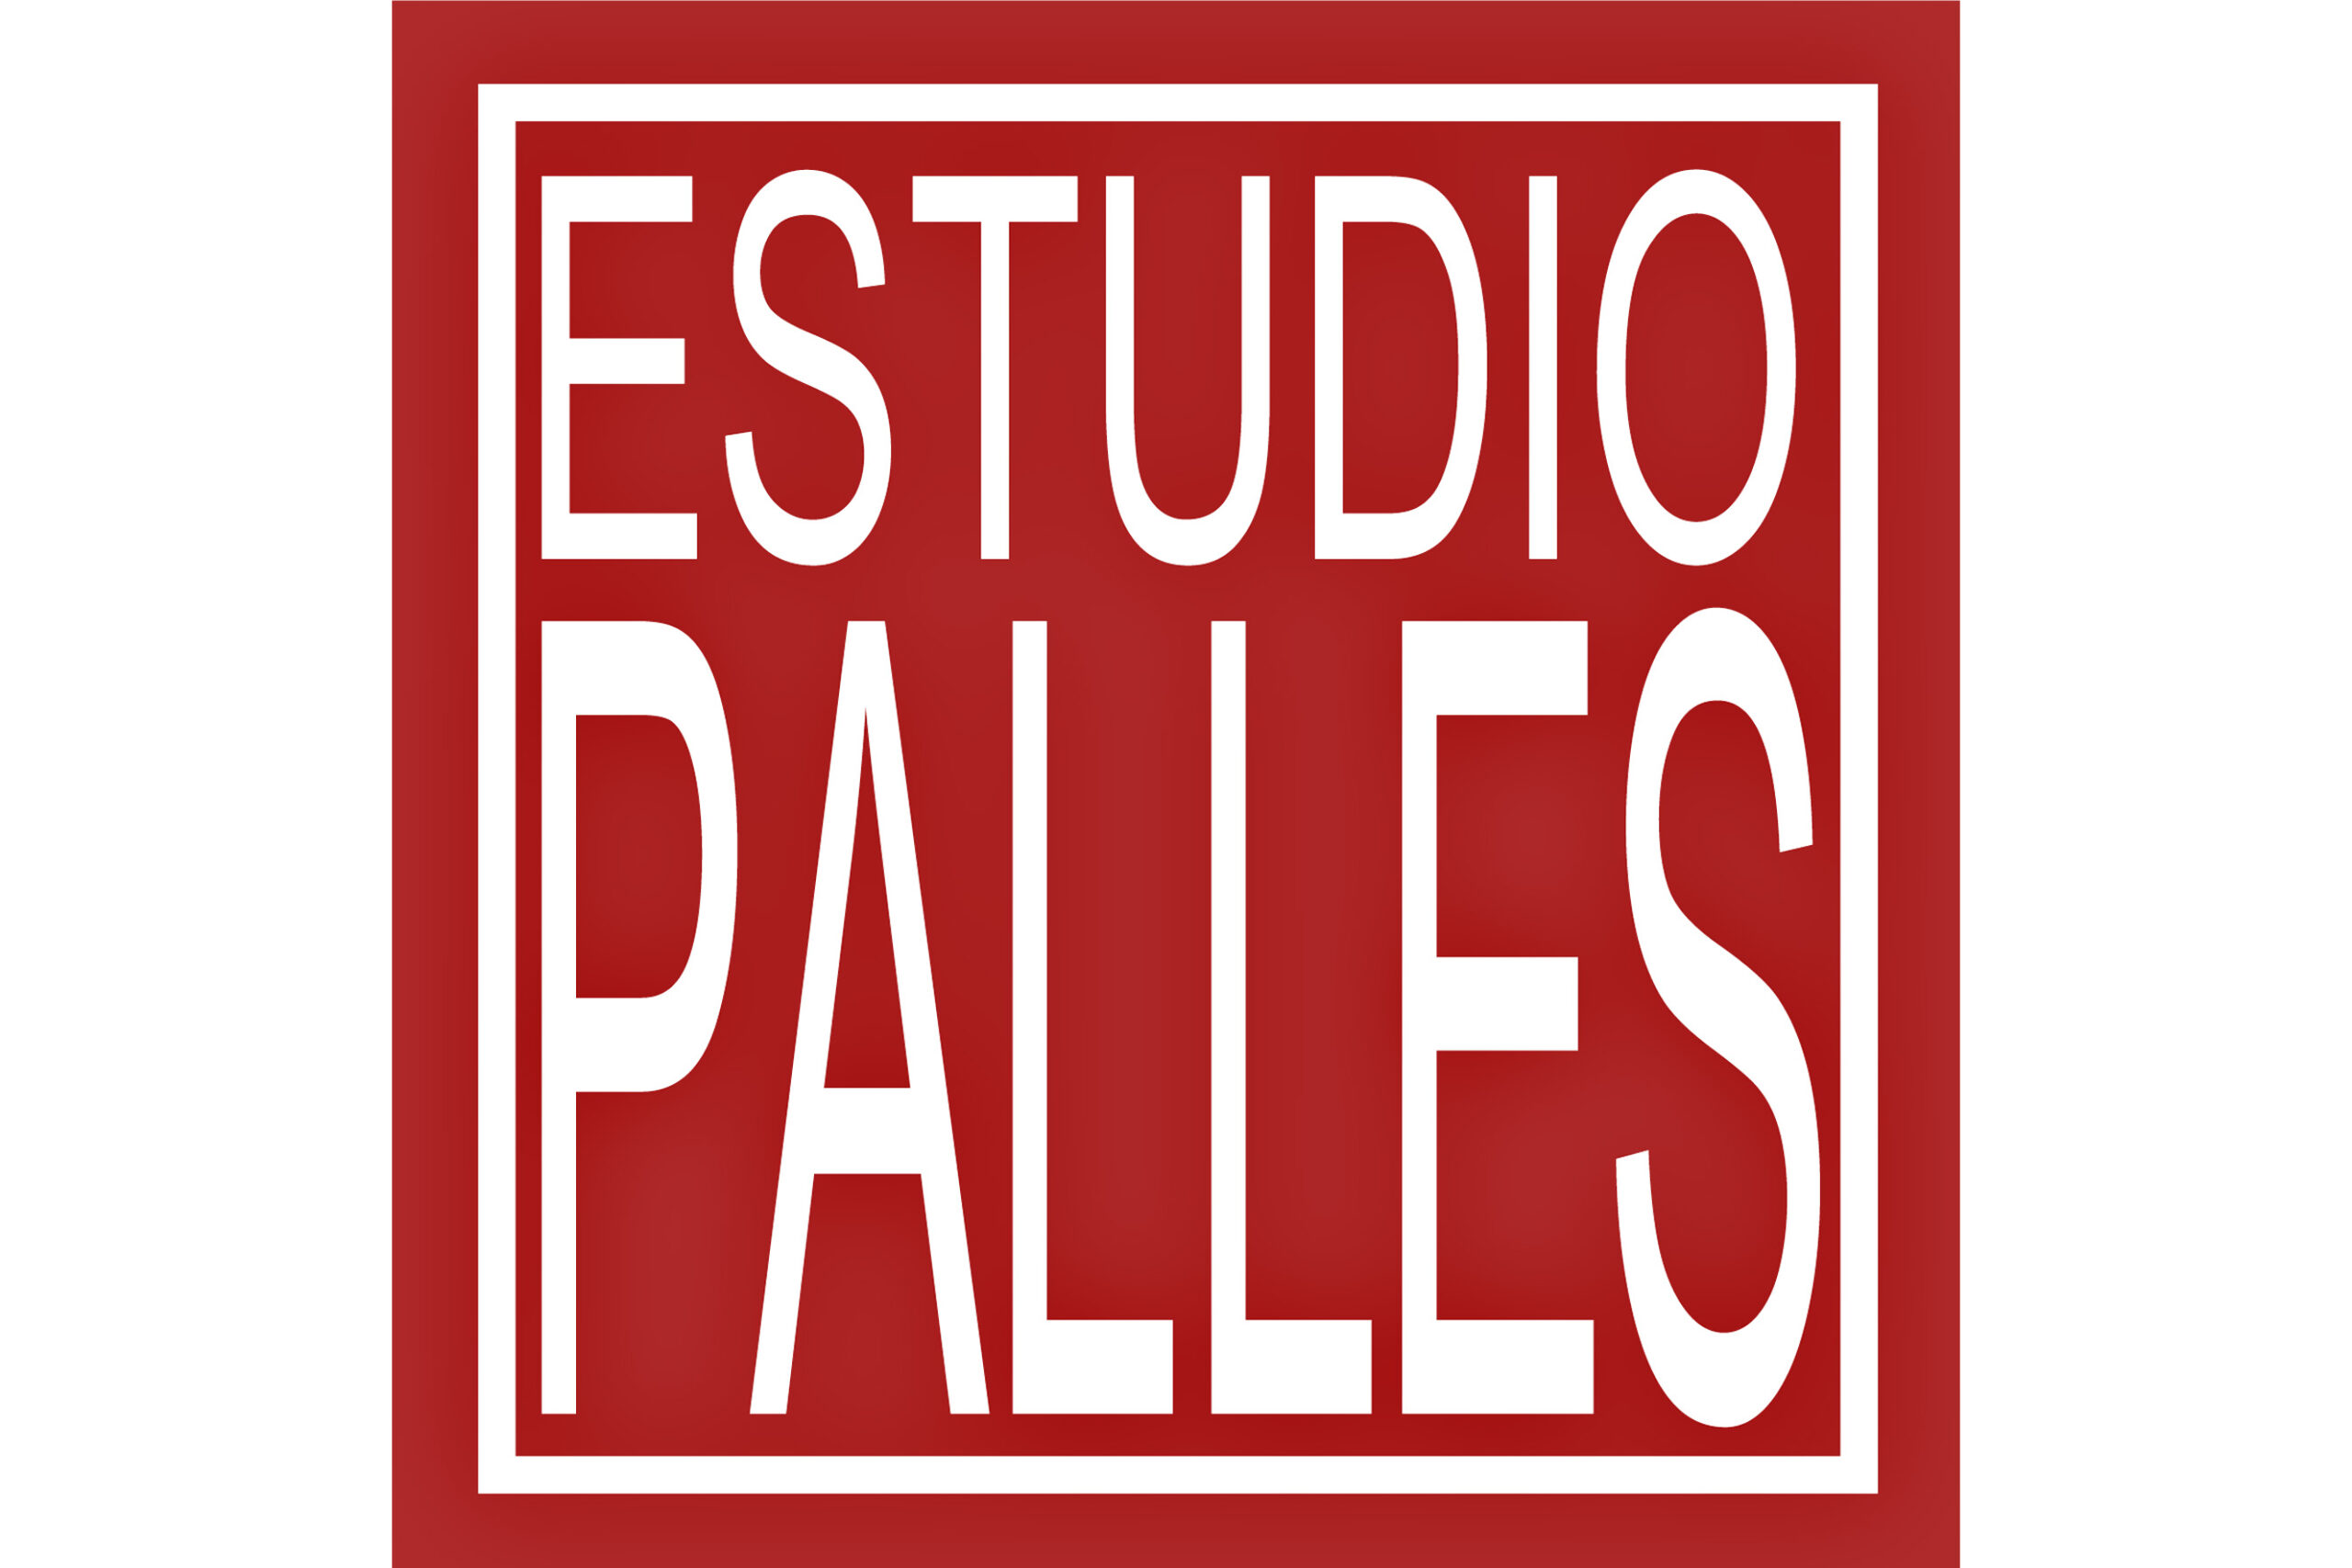 ESTUDIO PALLES